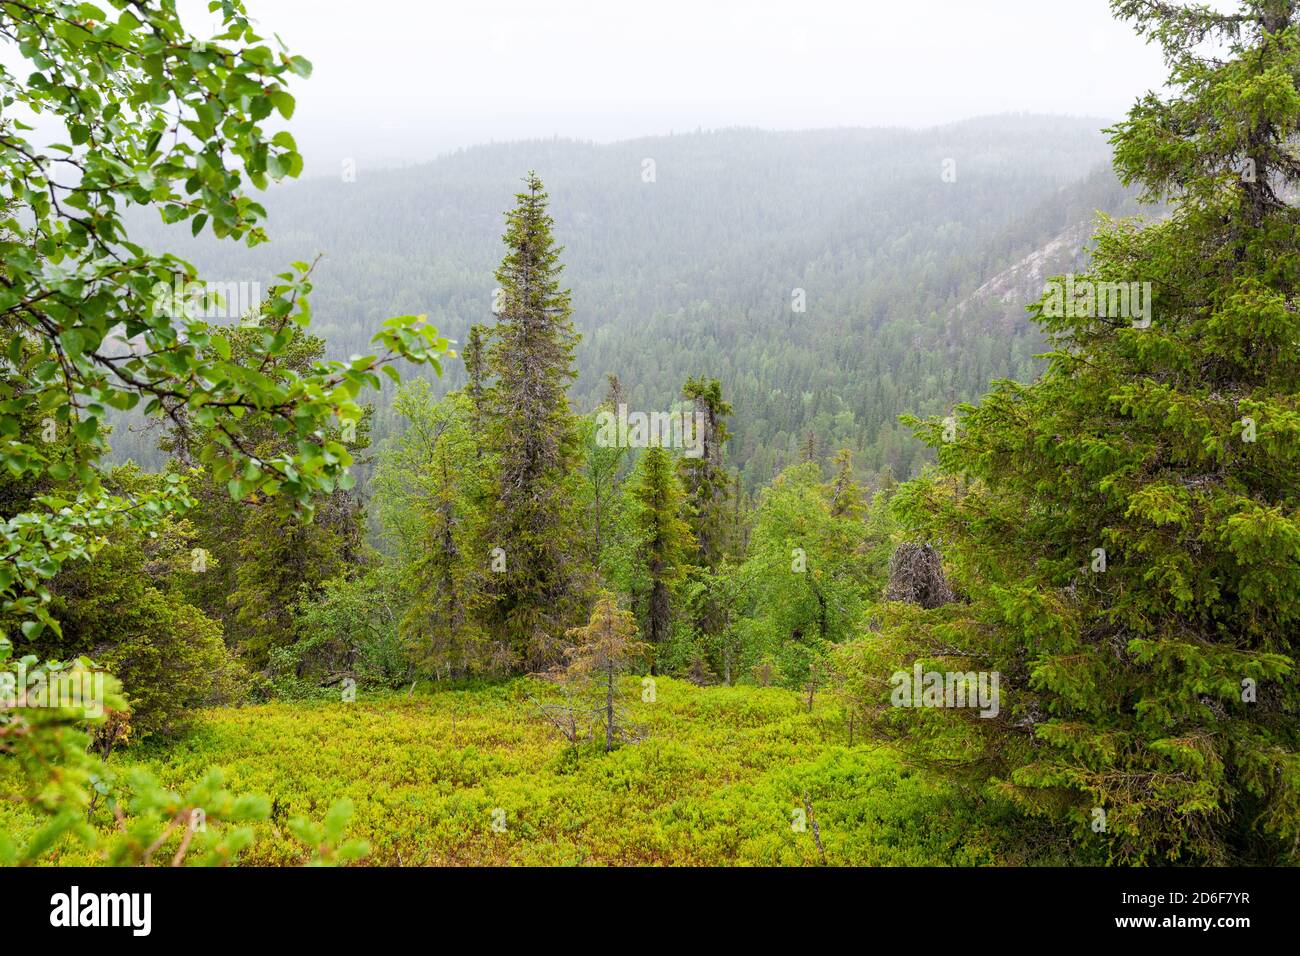 Une belle vue sur une forêt taïga à flanc de colline couverte d'arbres pendant l'été dans le nord de la Finlande. Banque D'Images